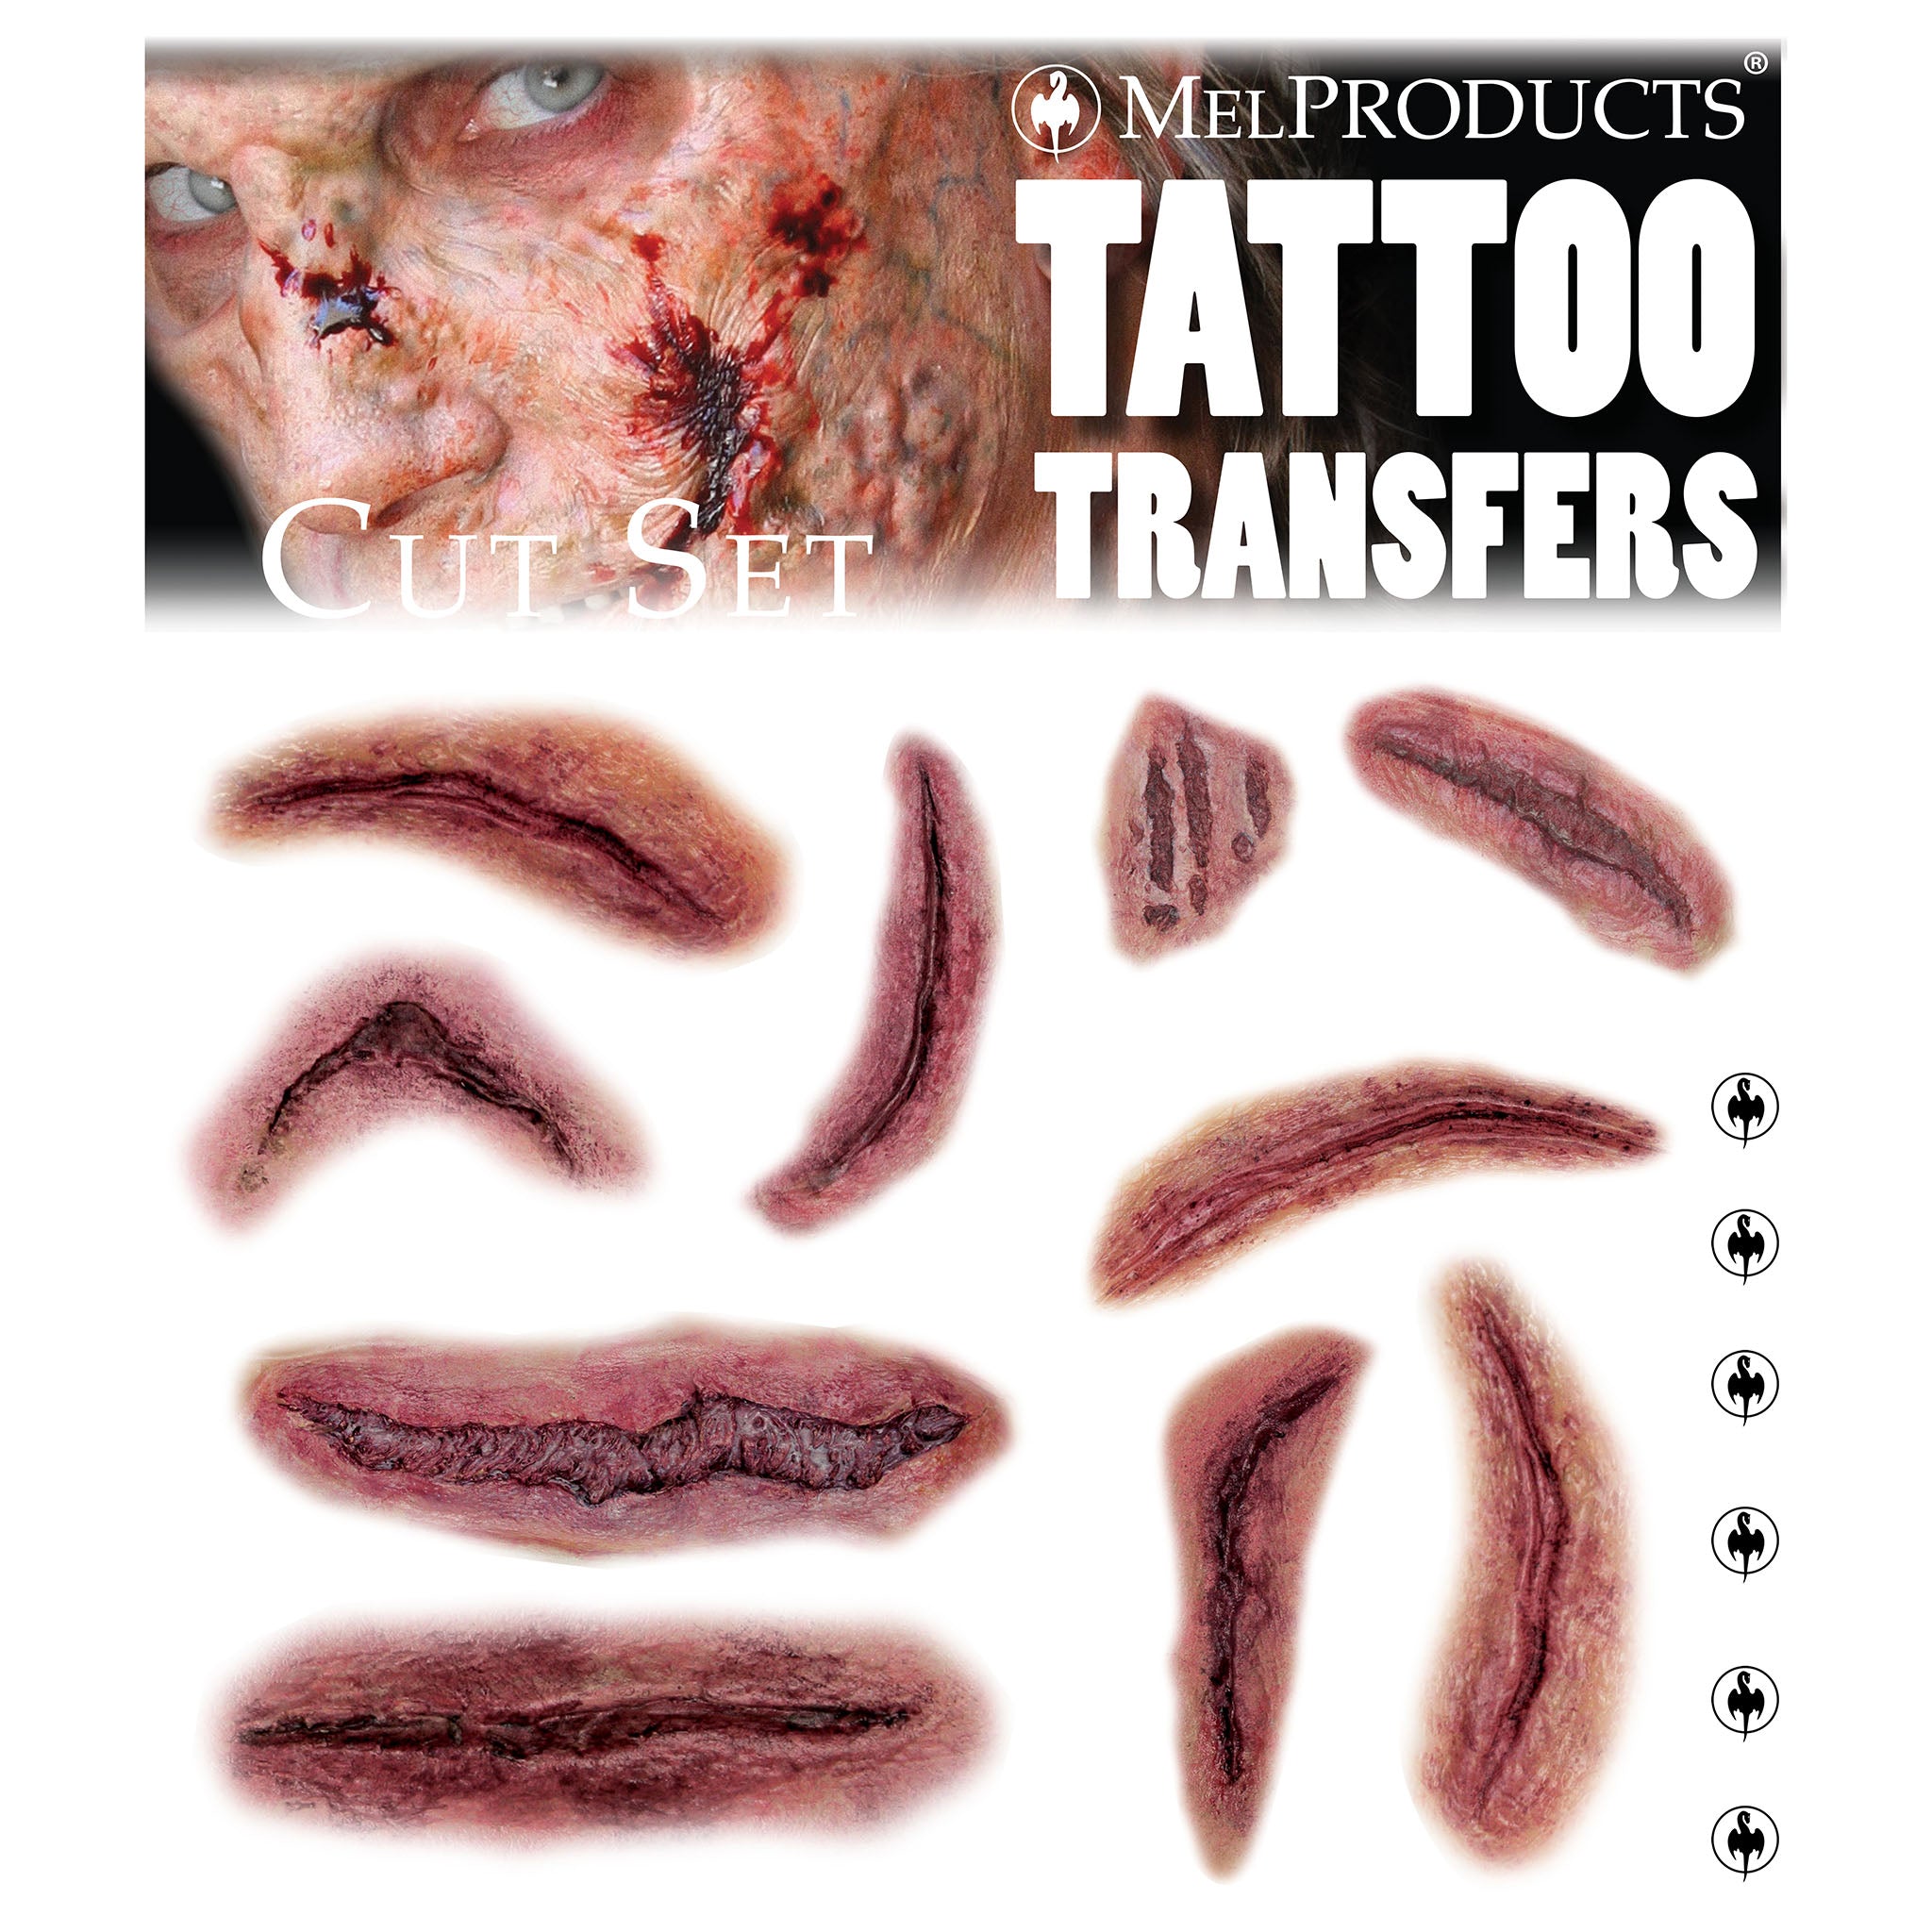 Tattoo Transfers